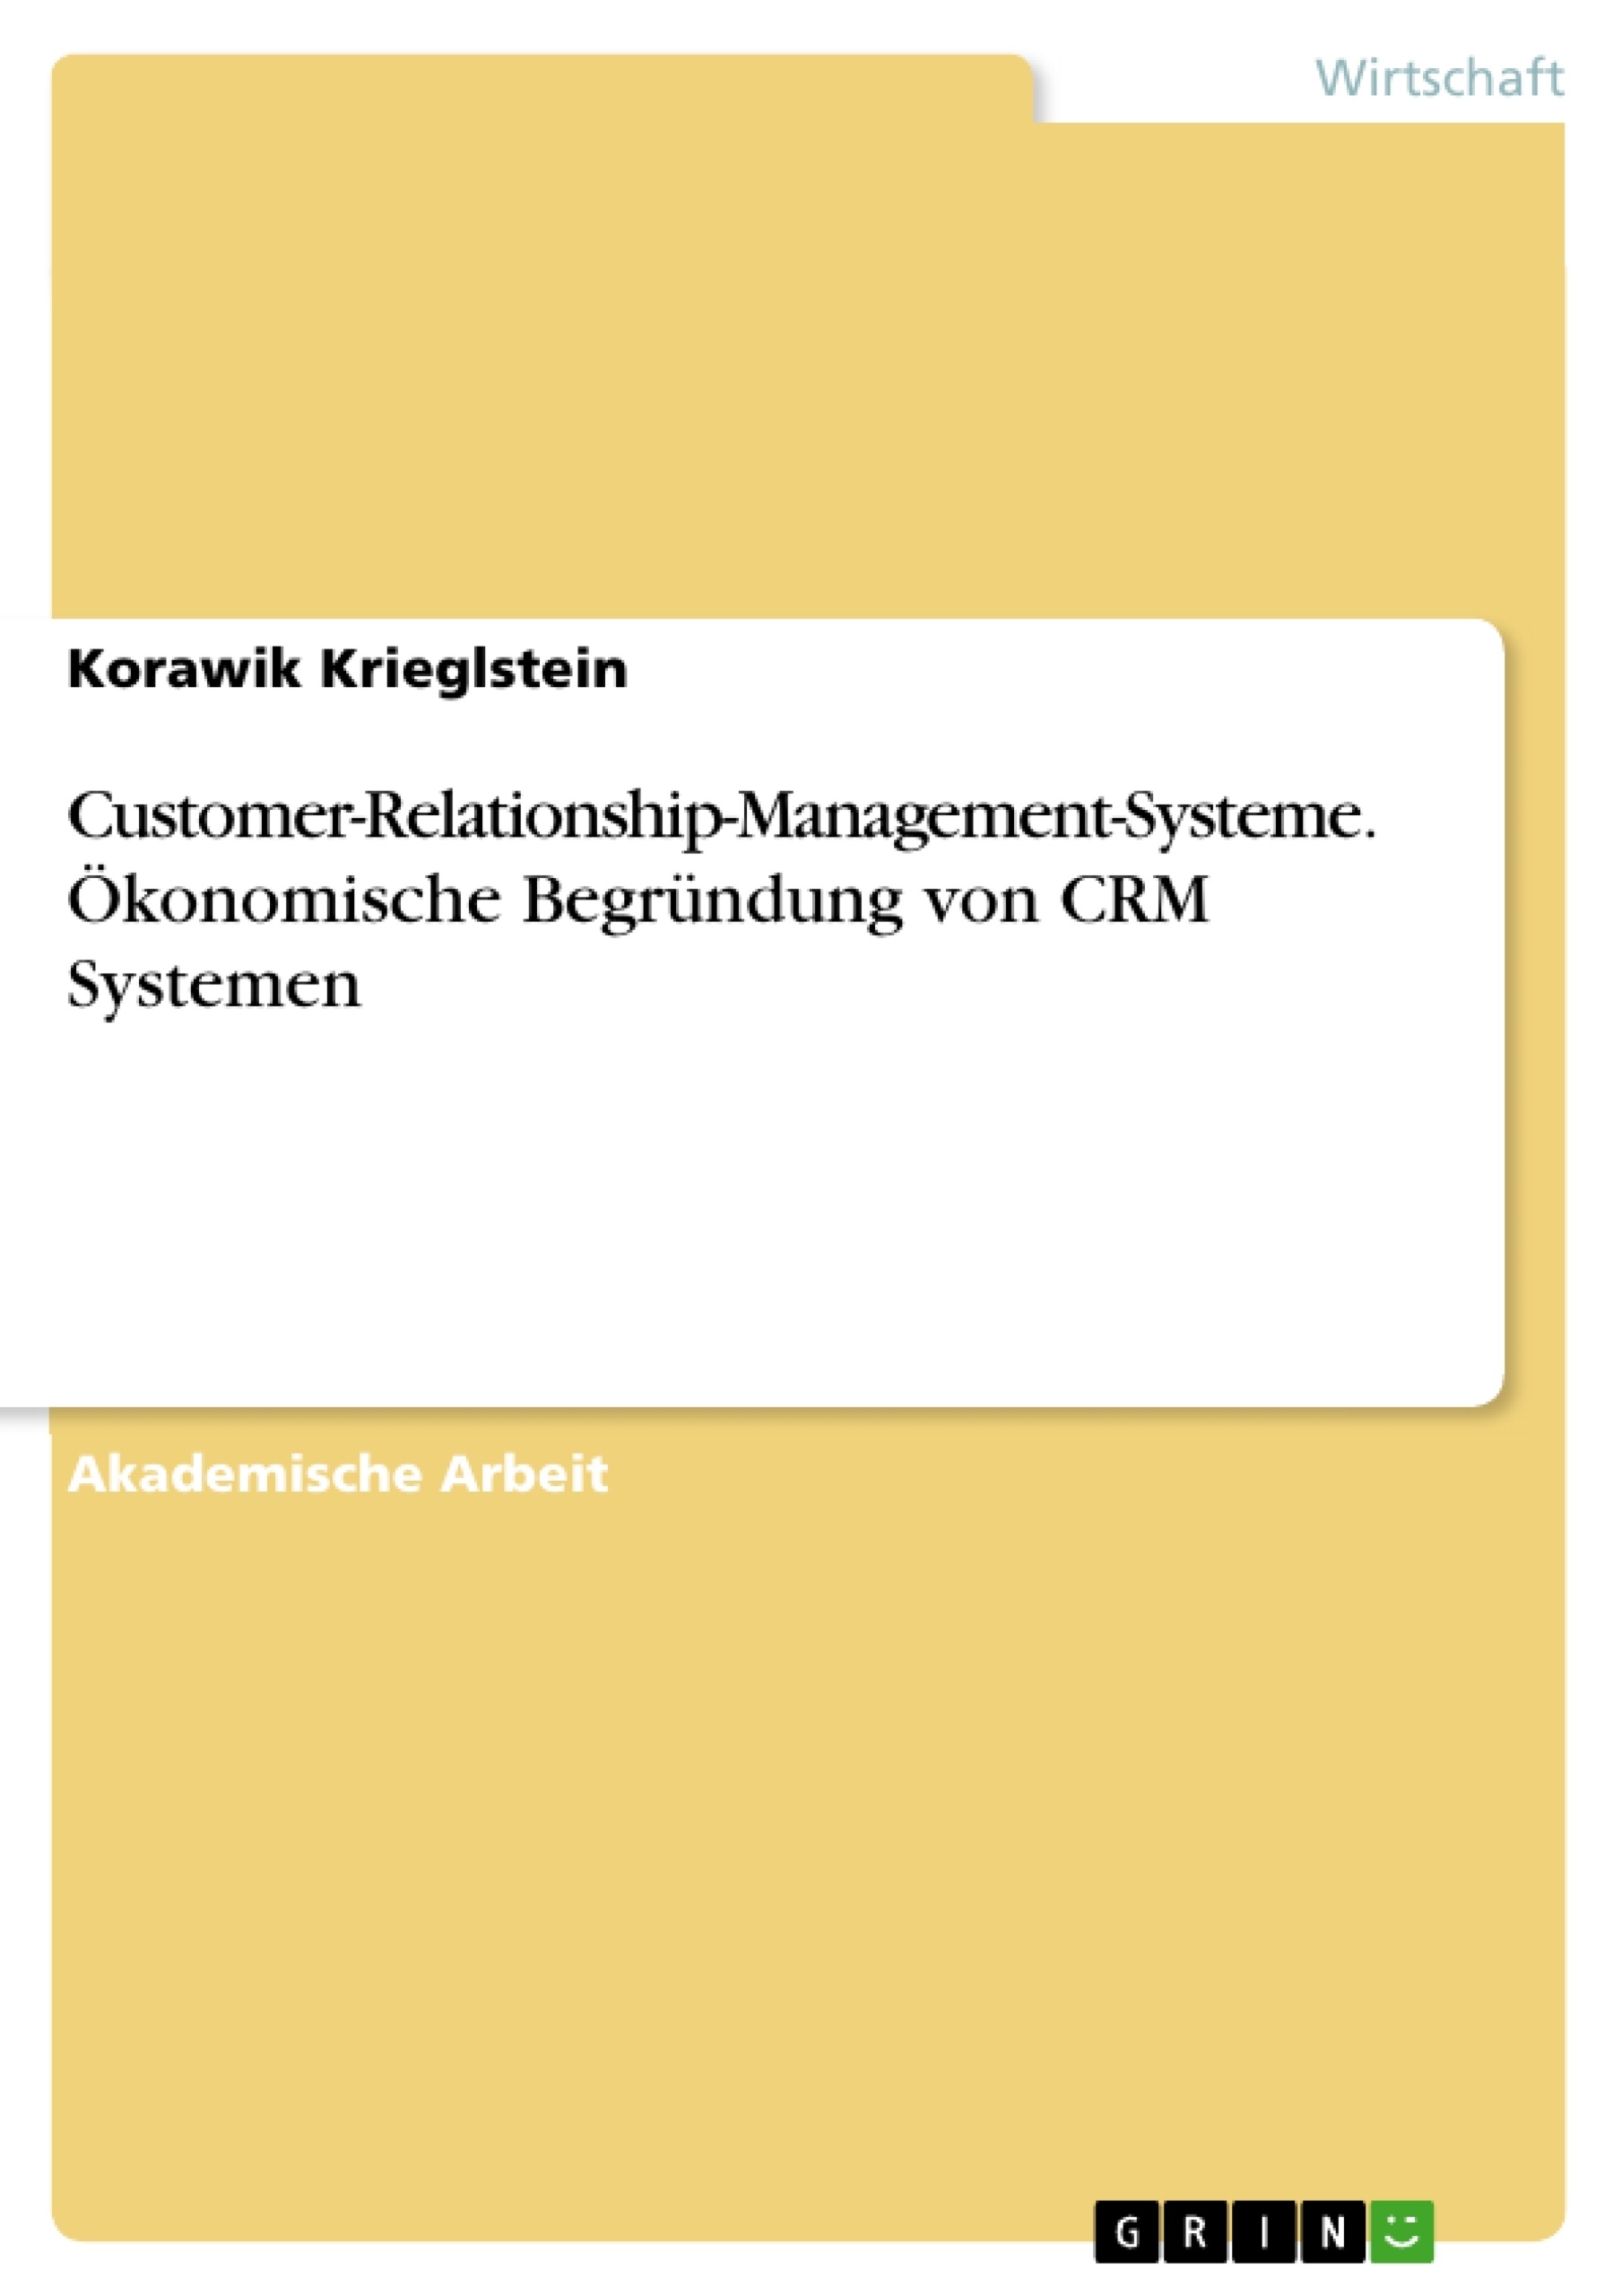 Title: Customer-Relationship-Management-Systeme. Ökonomische Begründung von CRM Systemen